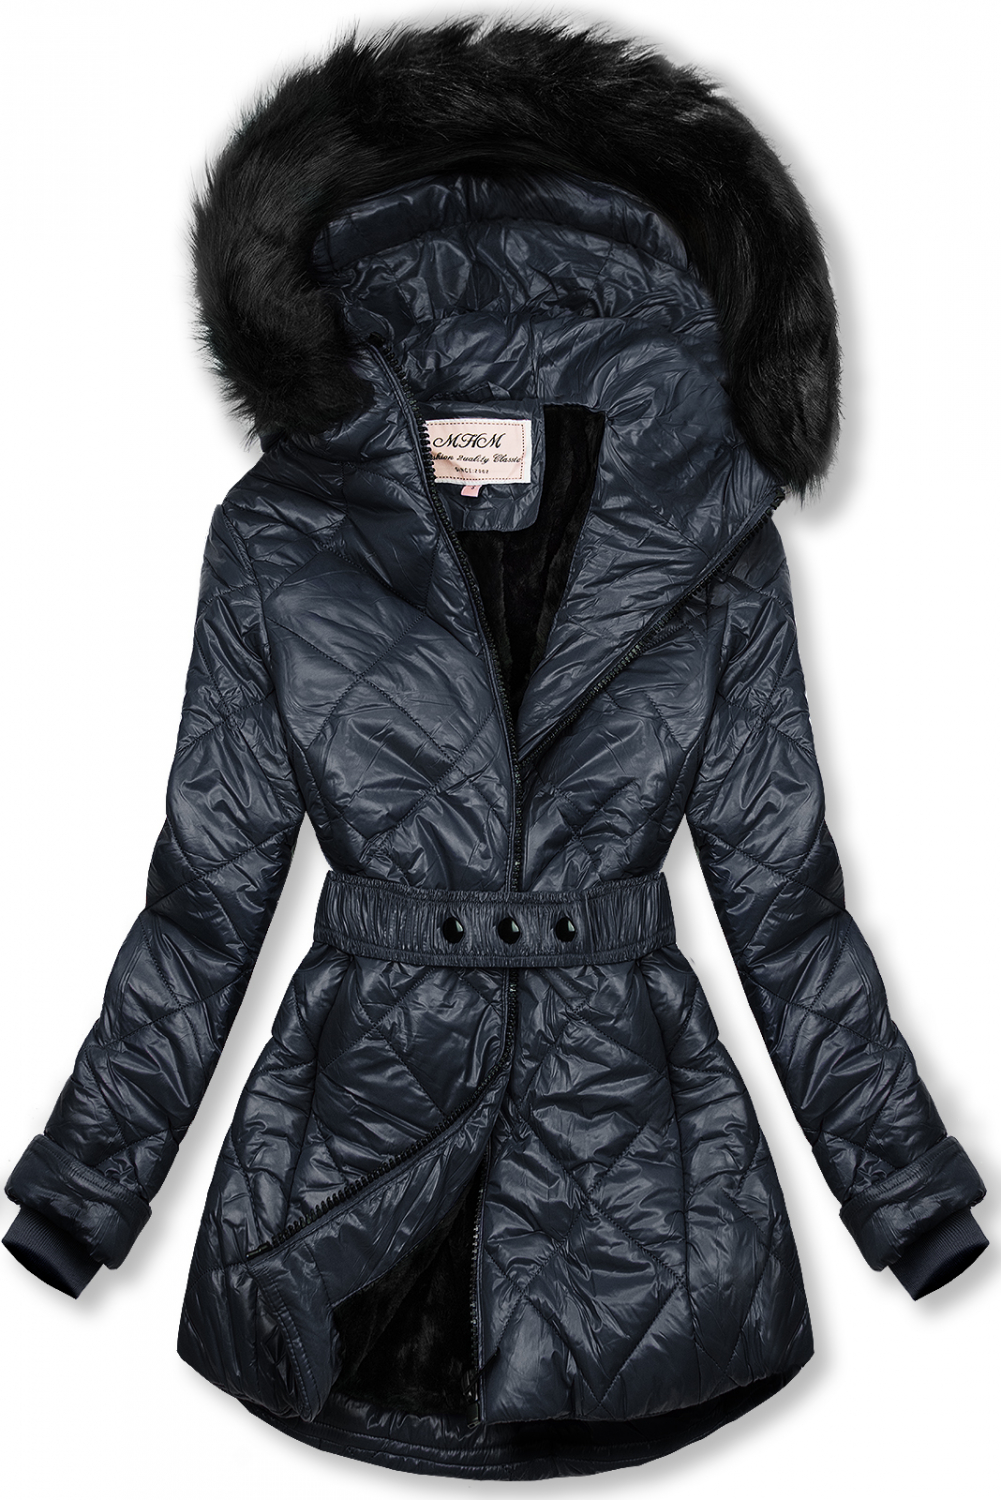 Tmavomodrá lesklá zimná bunda s opaskom.
- neodopínateľná kapucňa
- odnímateľná kožušina
- zapínanie na zips
- v prednej časti 2 vrecká 
- vnútro zateplené plyšom
- s opaskom
- materiál: 100% polyester, podšívka: 100% polyester
 